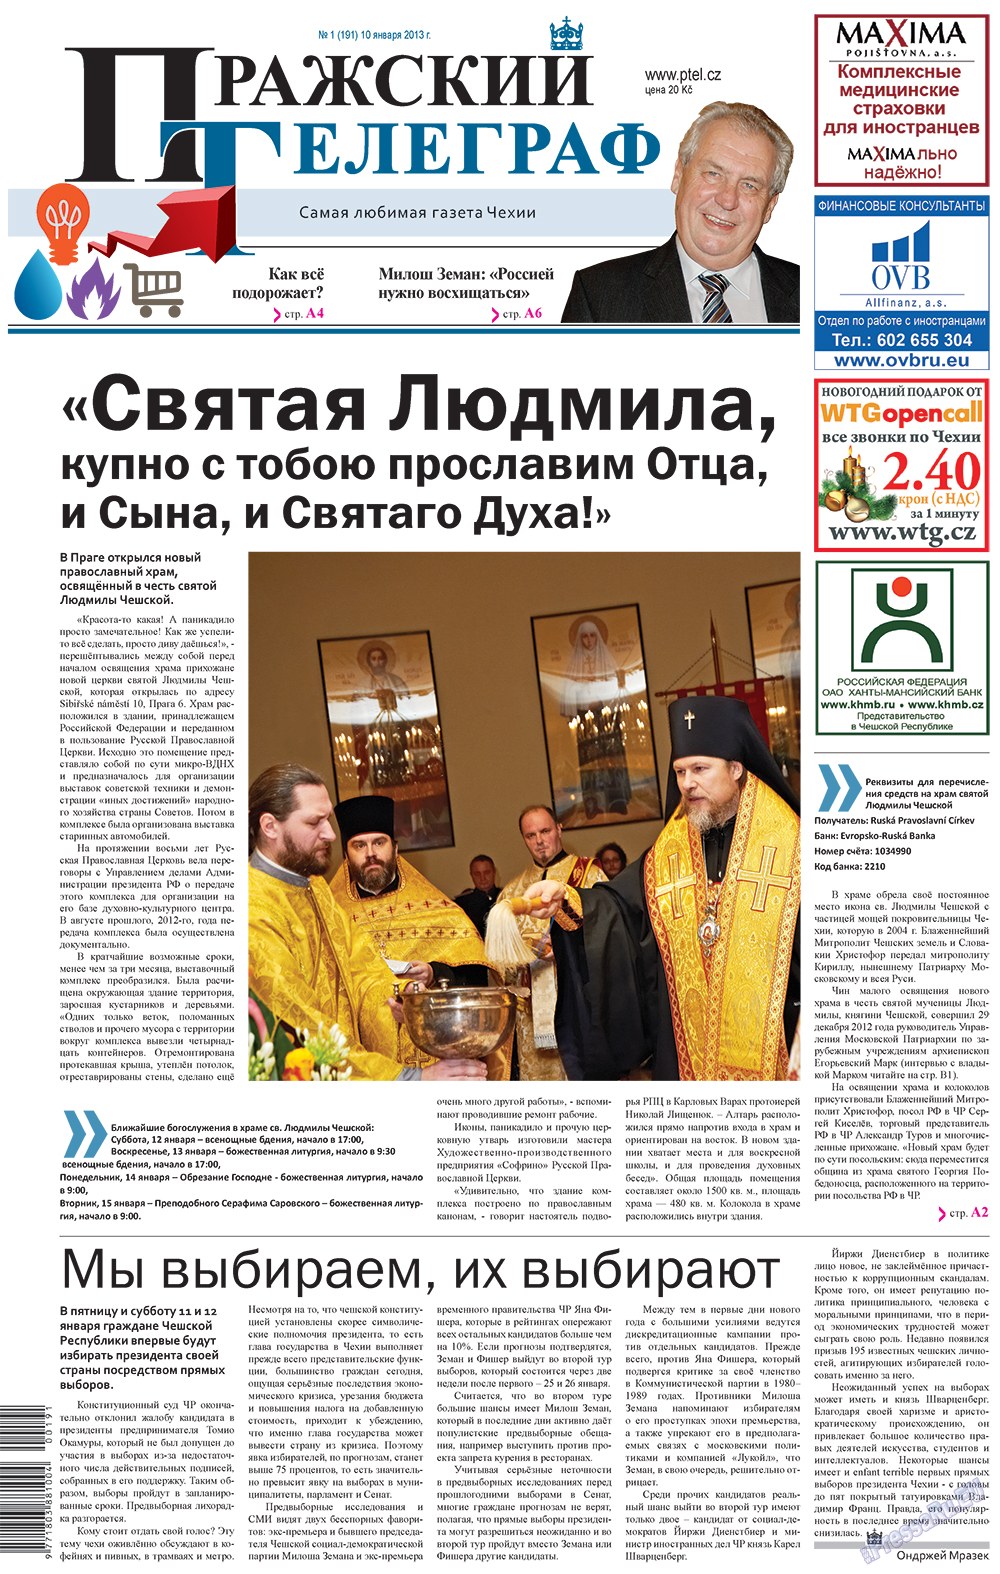 Пражский телеграф (газета). 2013 год, номер 1, стр. 1